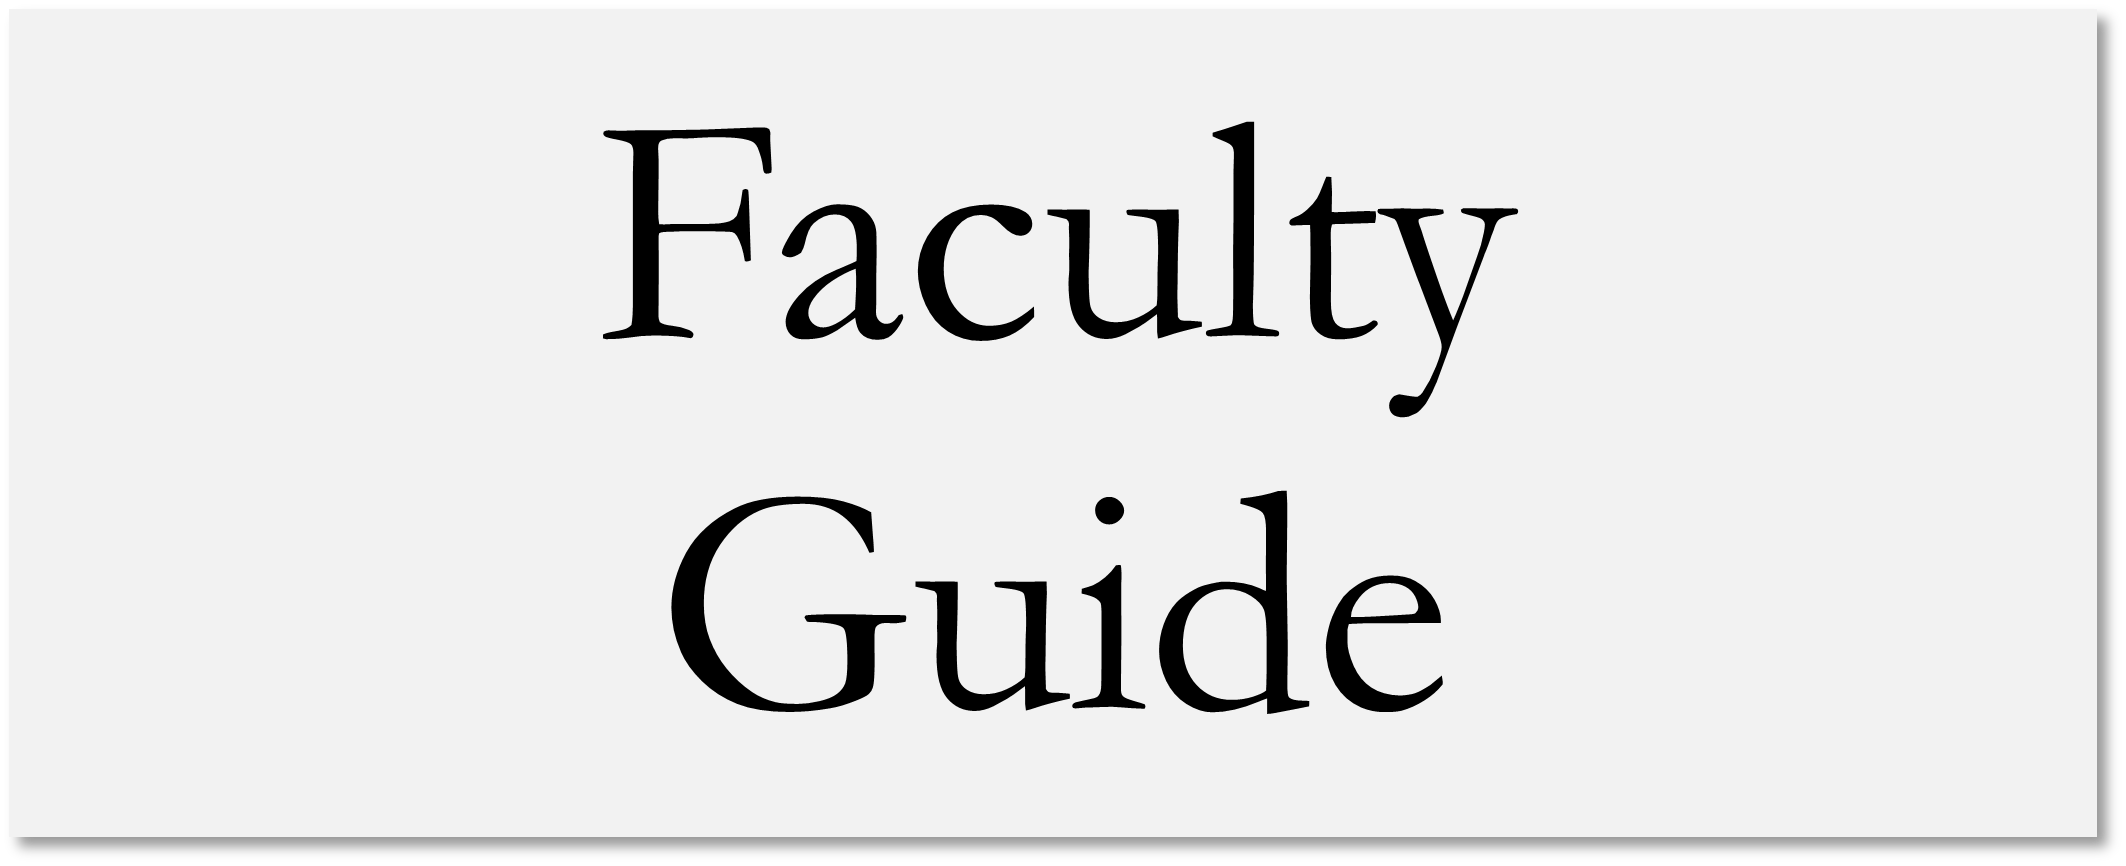 Faculty Guide logo